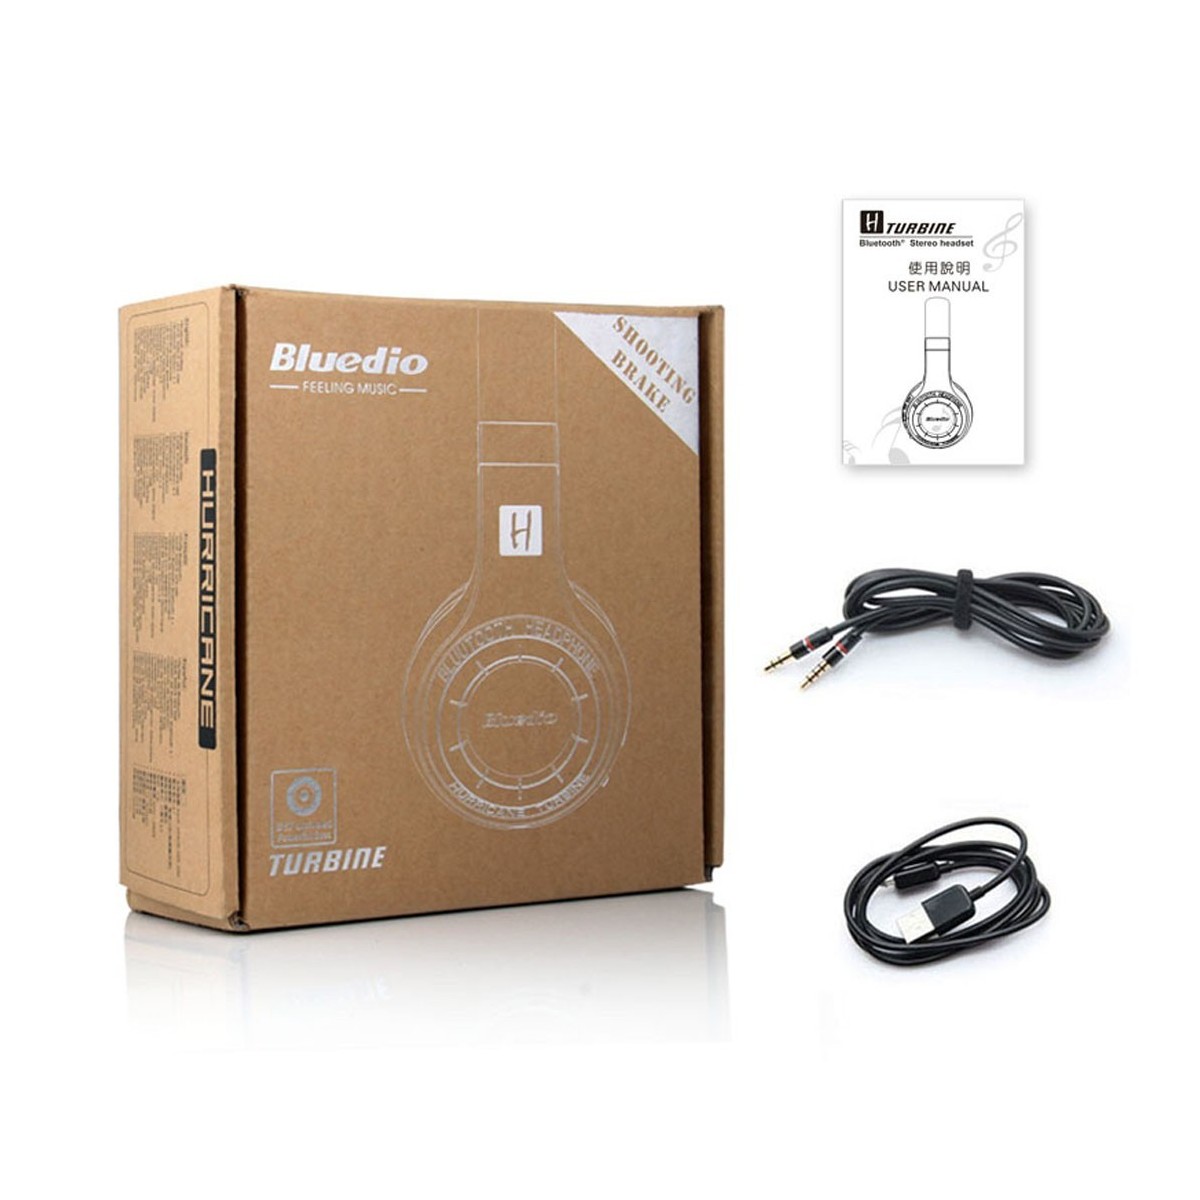 Casque Bluetooth Bluedio H+ (Turbine)  stéréo sans fil écouteur microphone intégré Micro-SD-FM Radio Noir